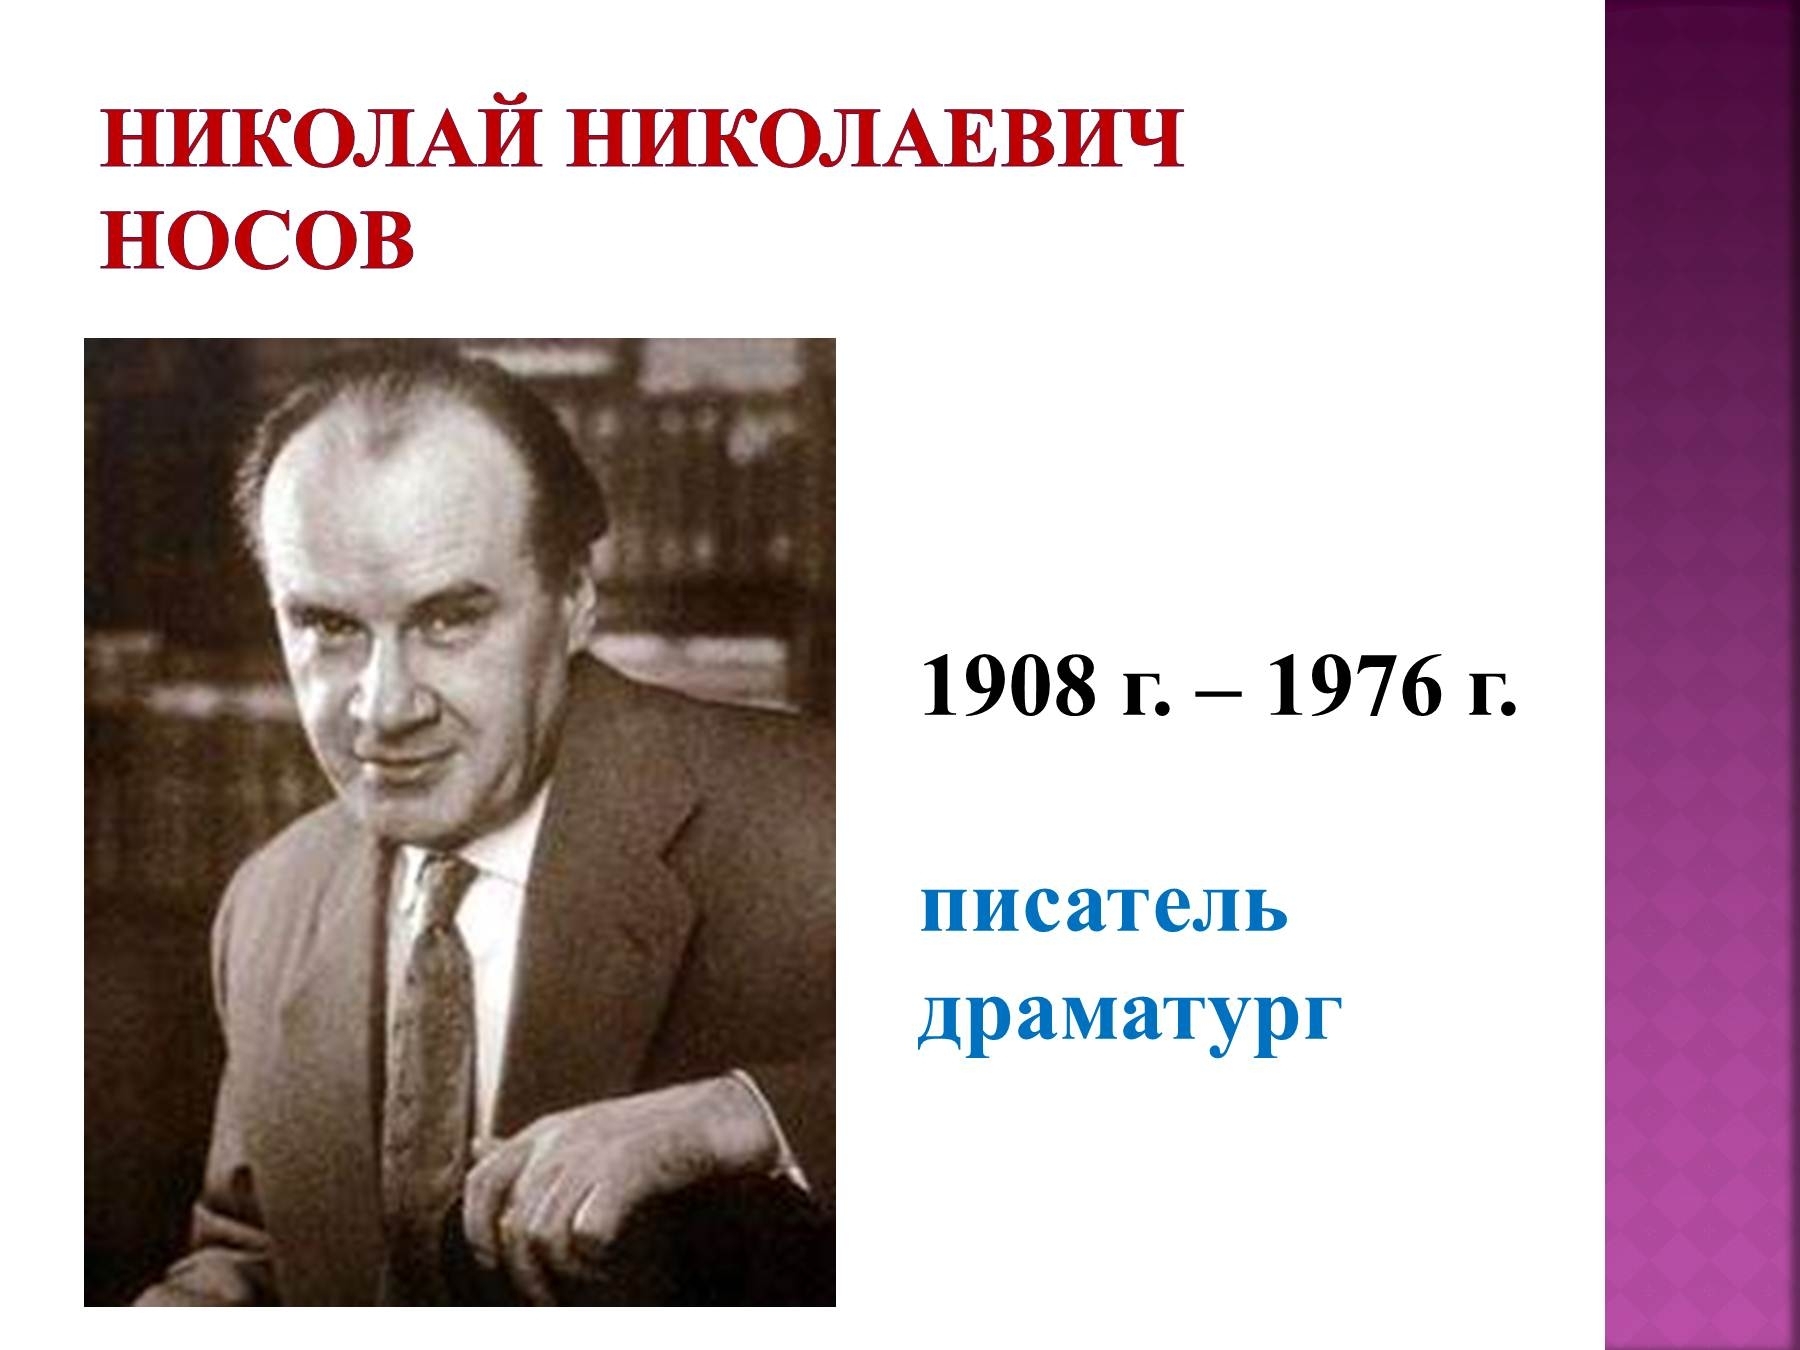 Николай Николаевич Носов (1908 - 26.07.1976)